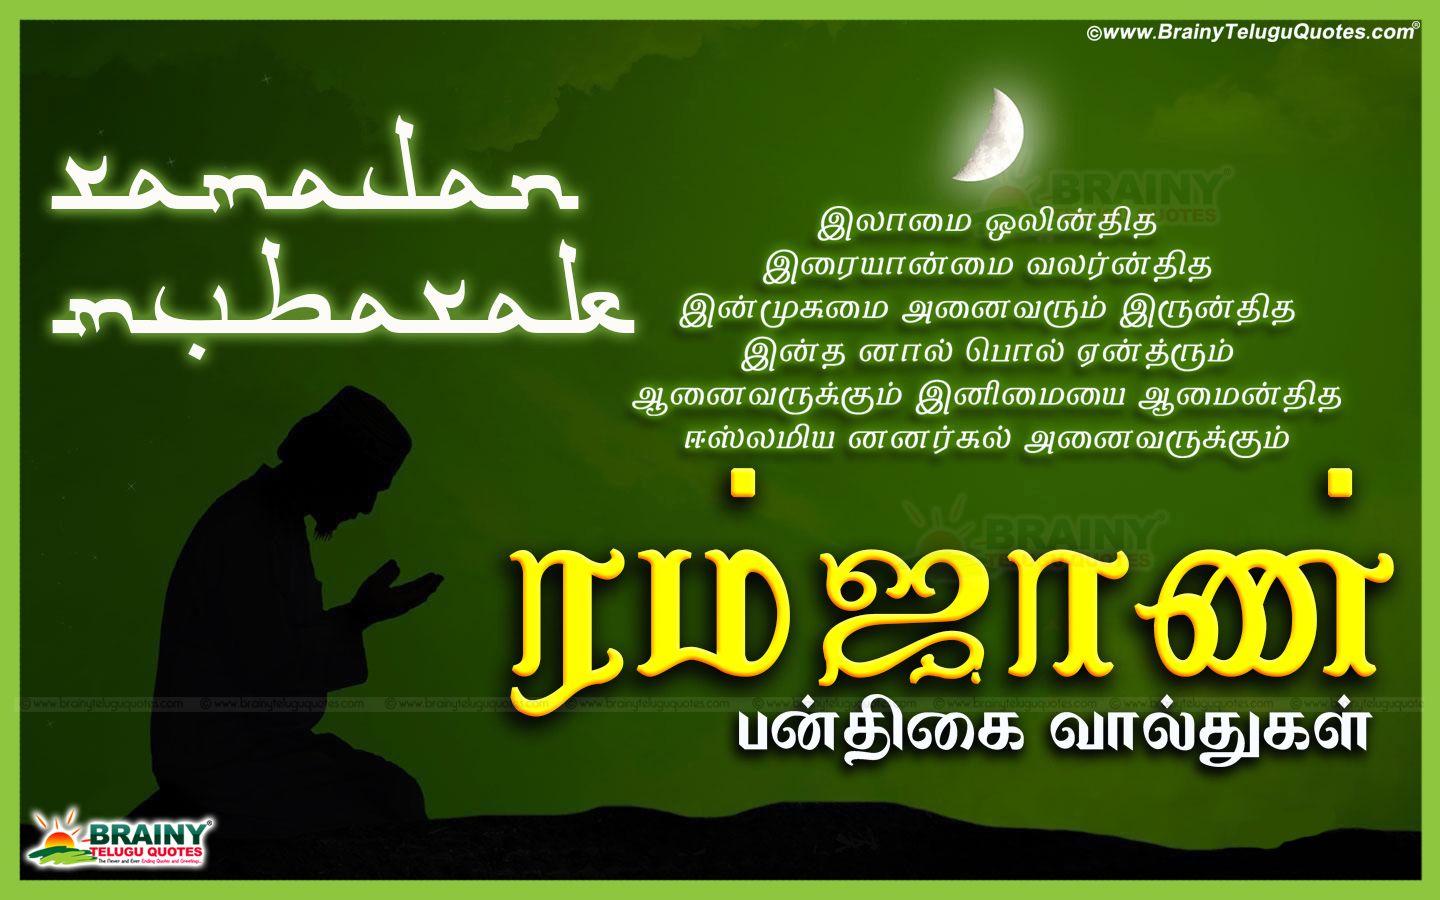 Ramalan Hug Best Tamil Ramalan Image and Quotes